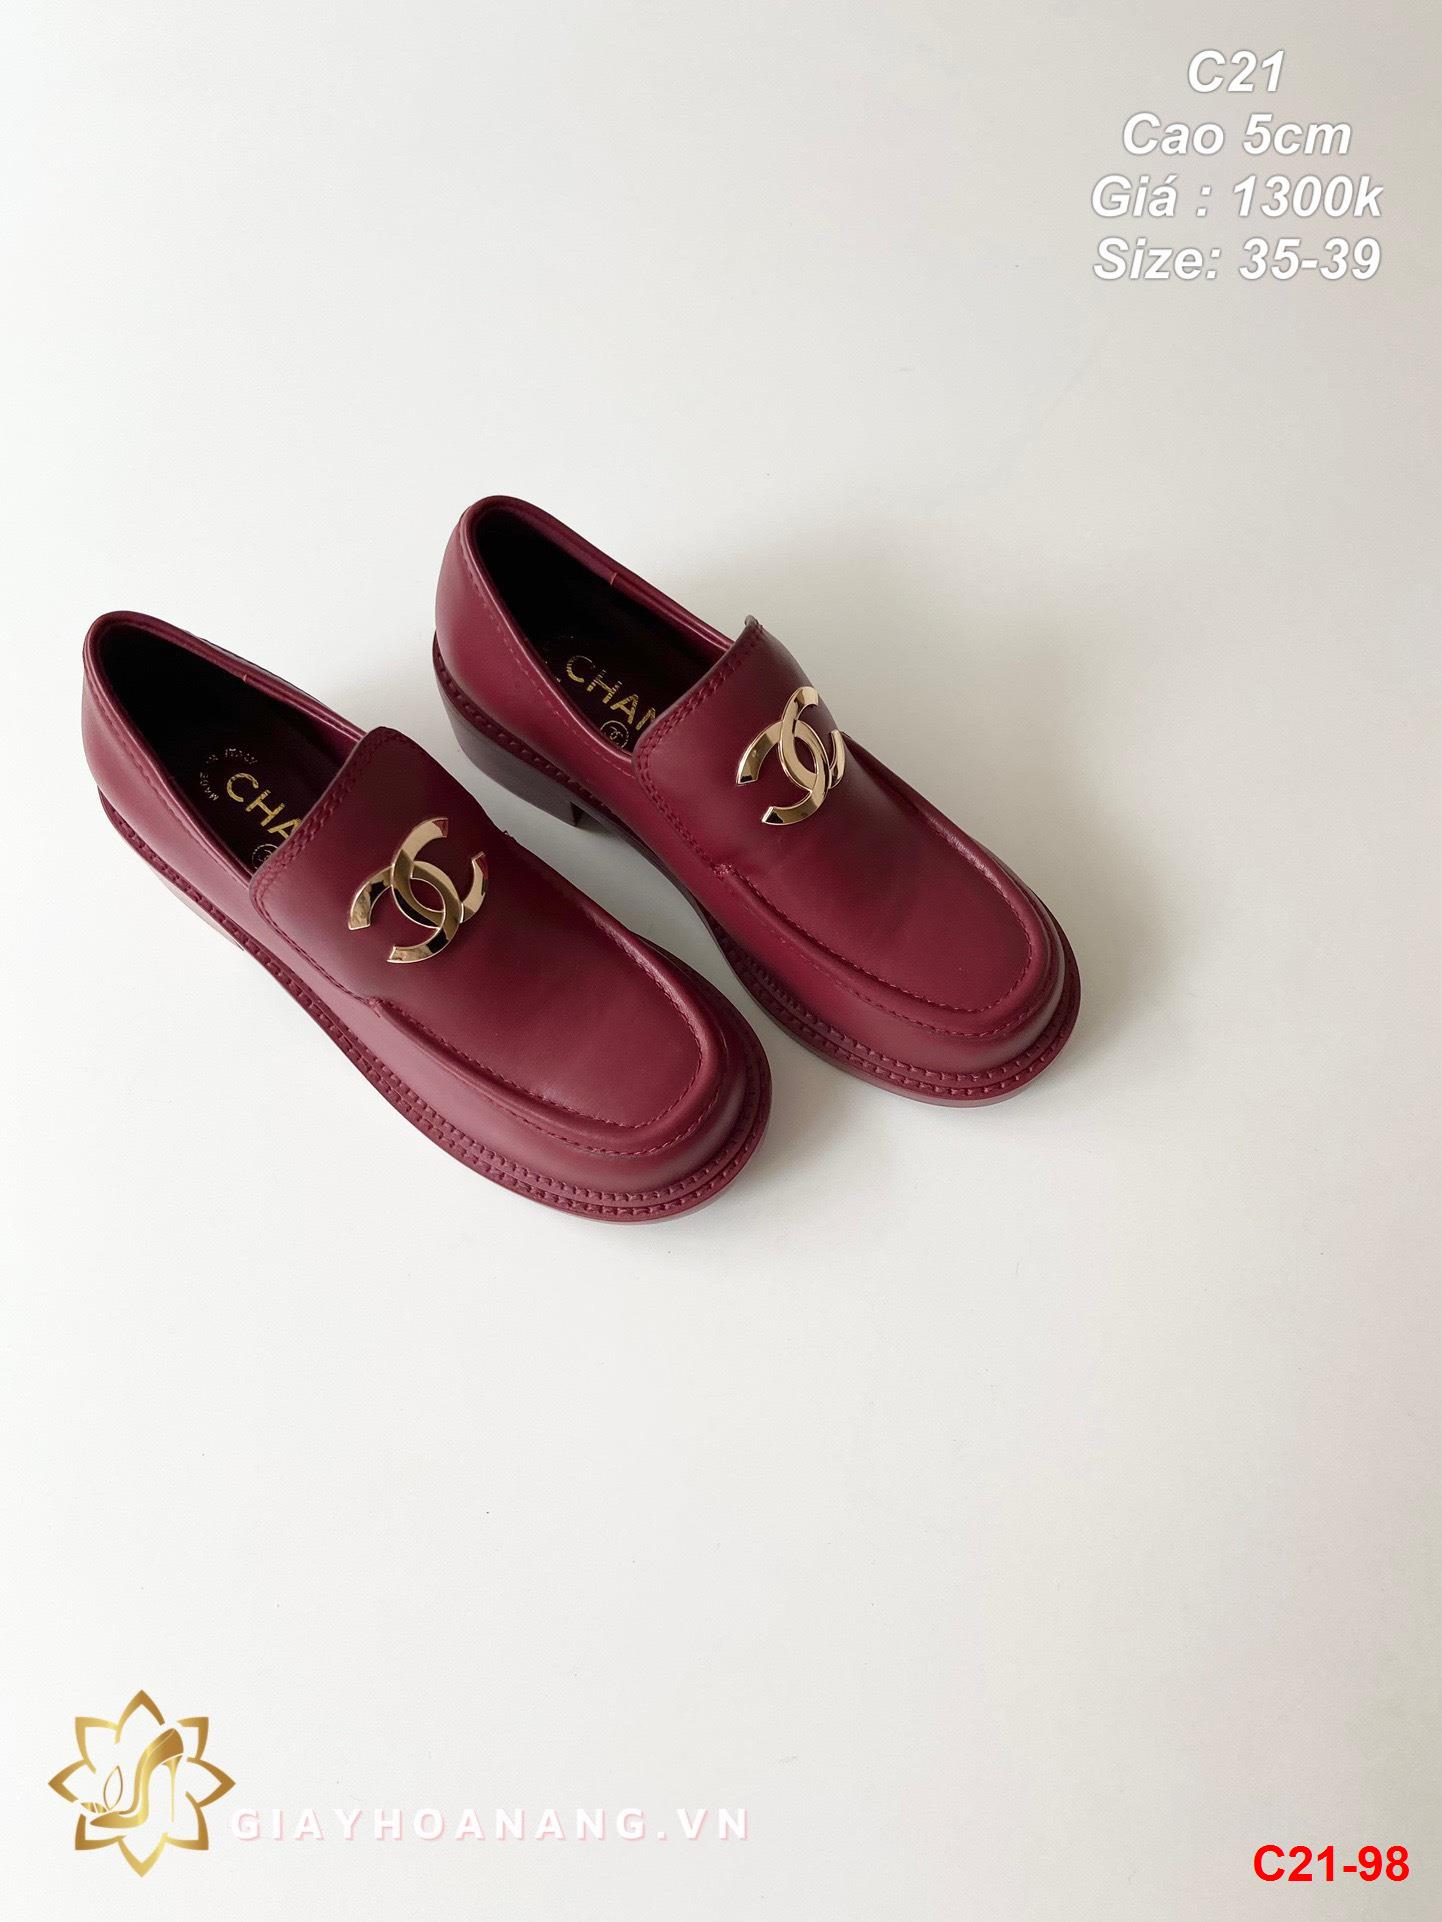 C21-98 Chanel giày cao 5cm siêu cấp